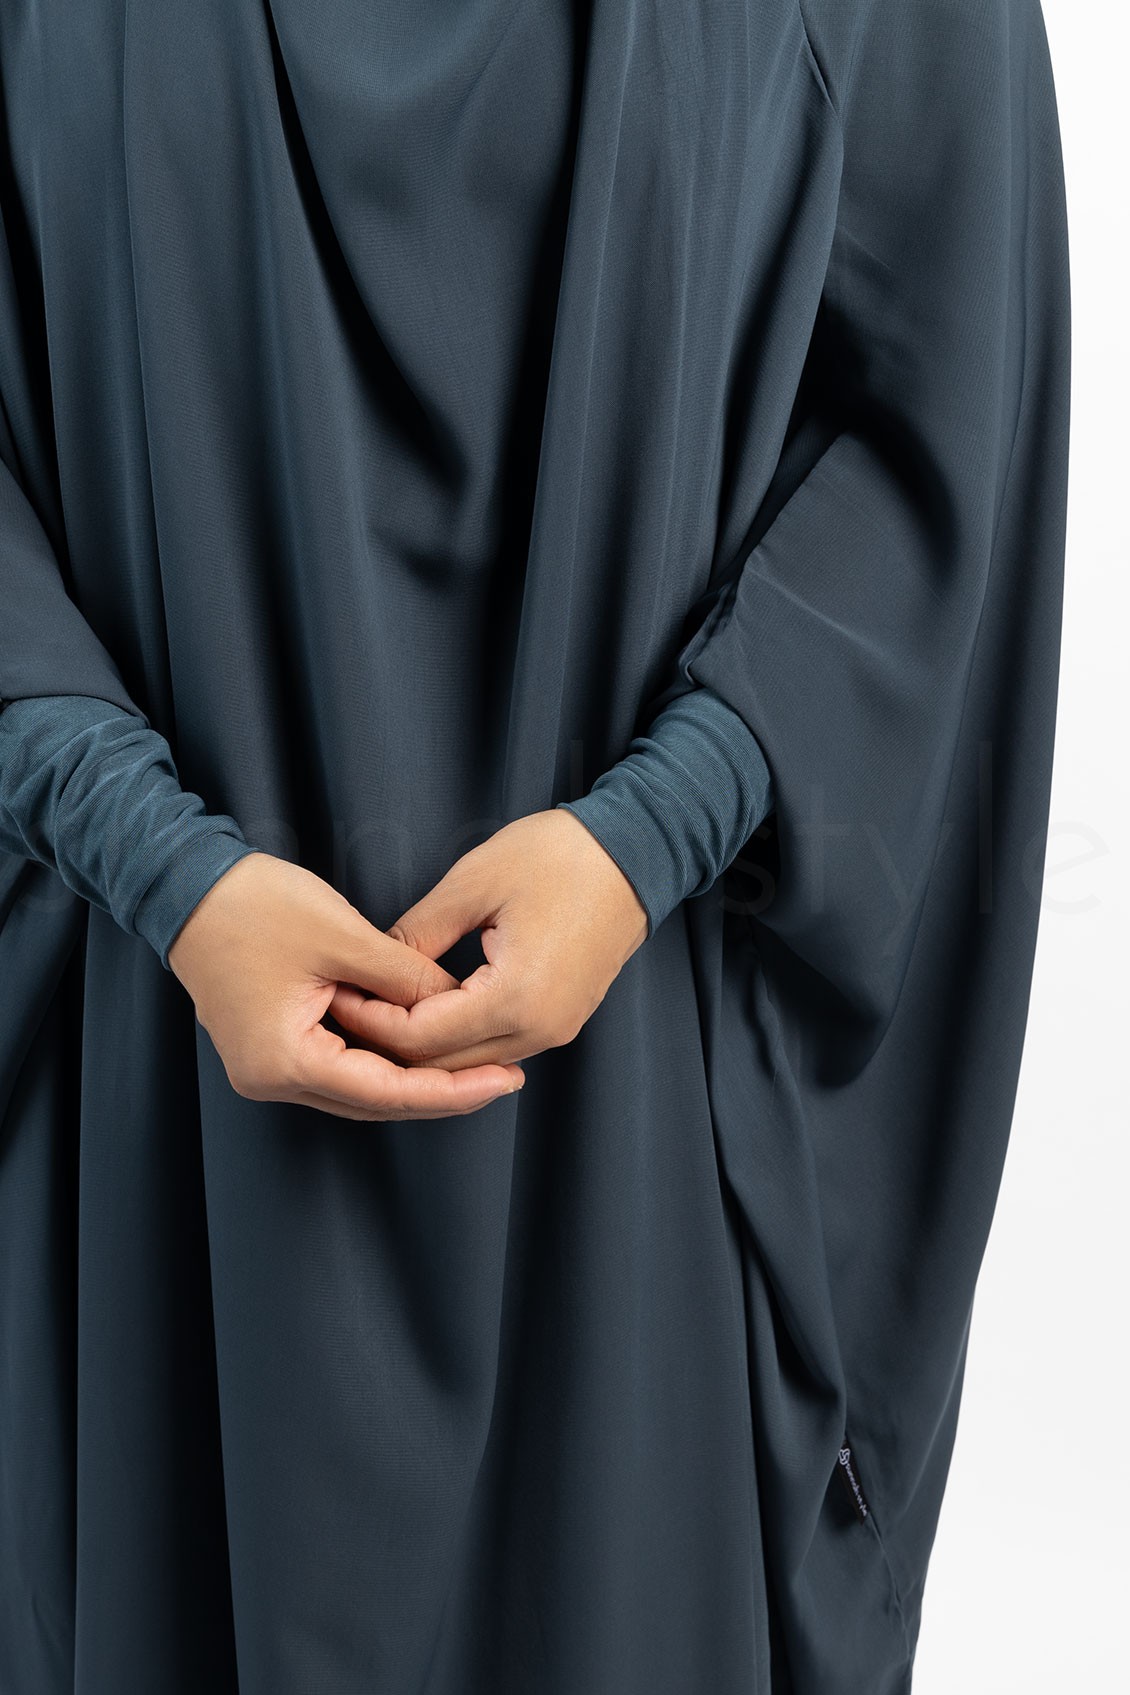 Sunnah Style Plain Full Length Jilbab French Jilbab Slate Blue